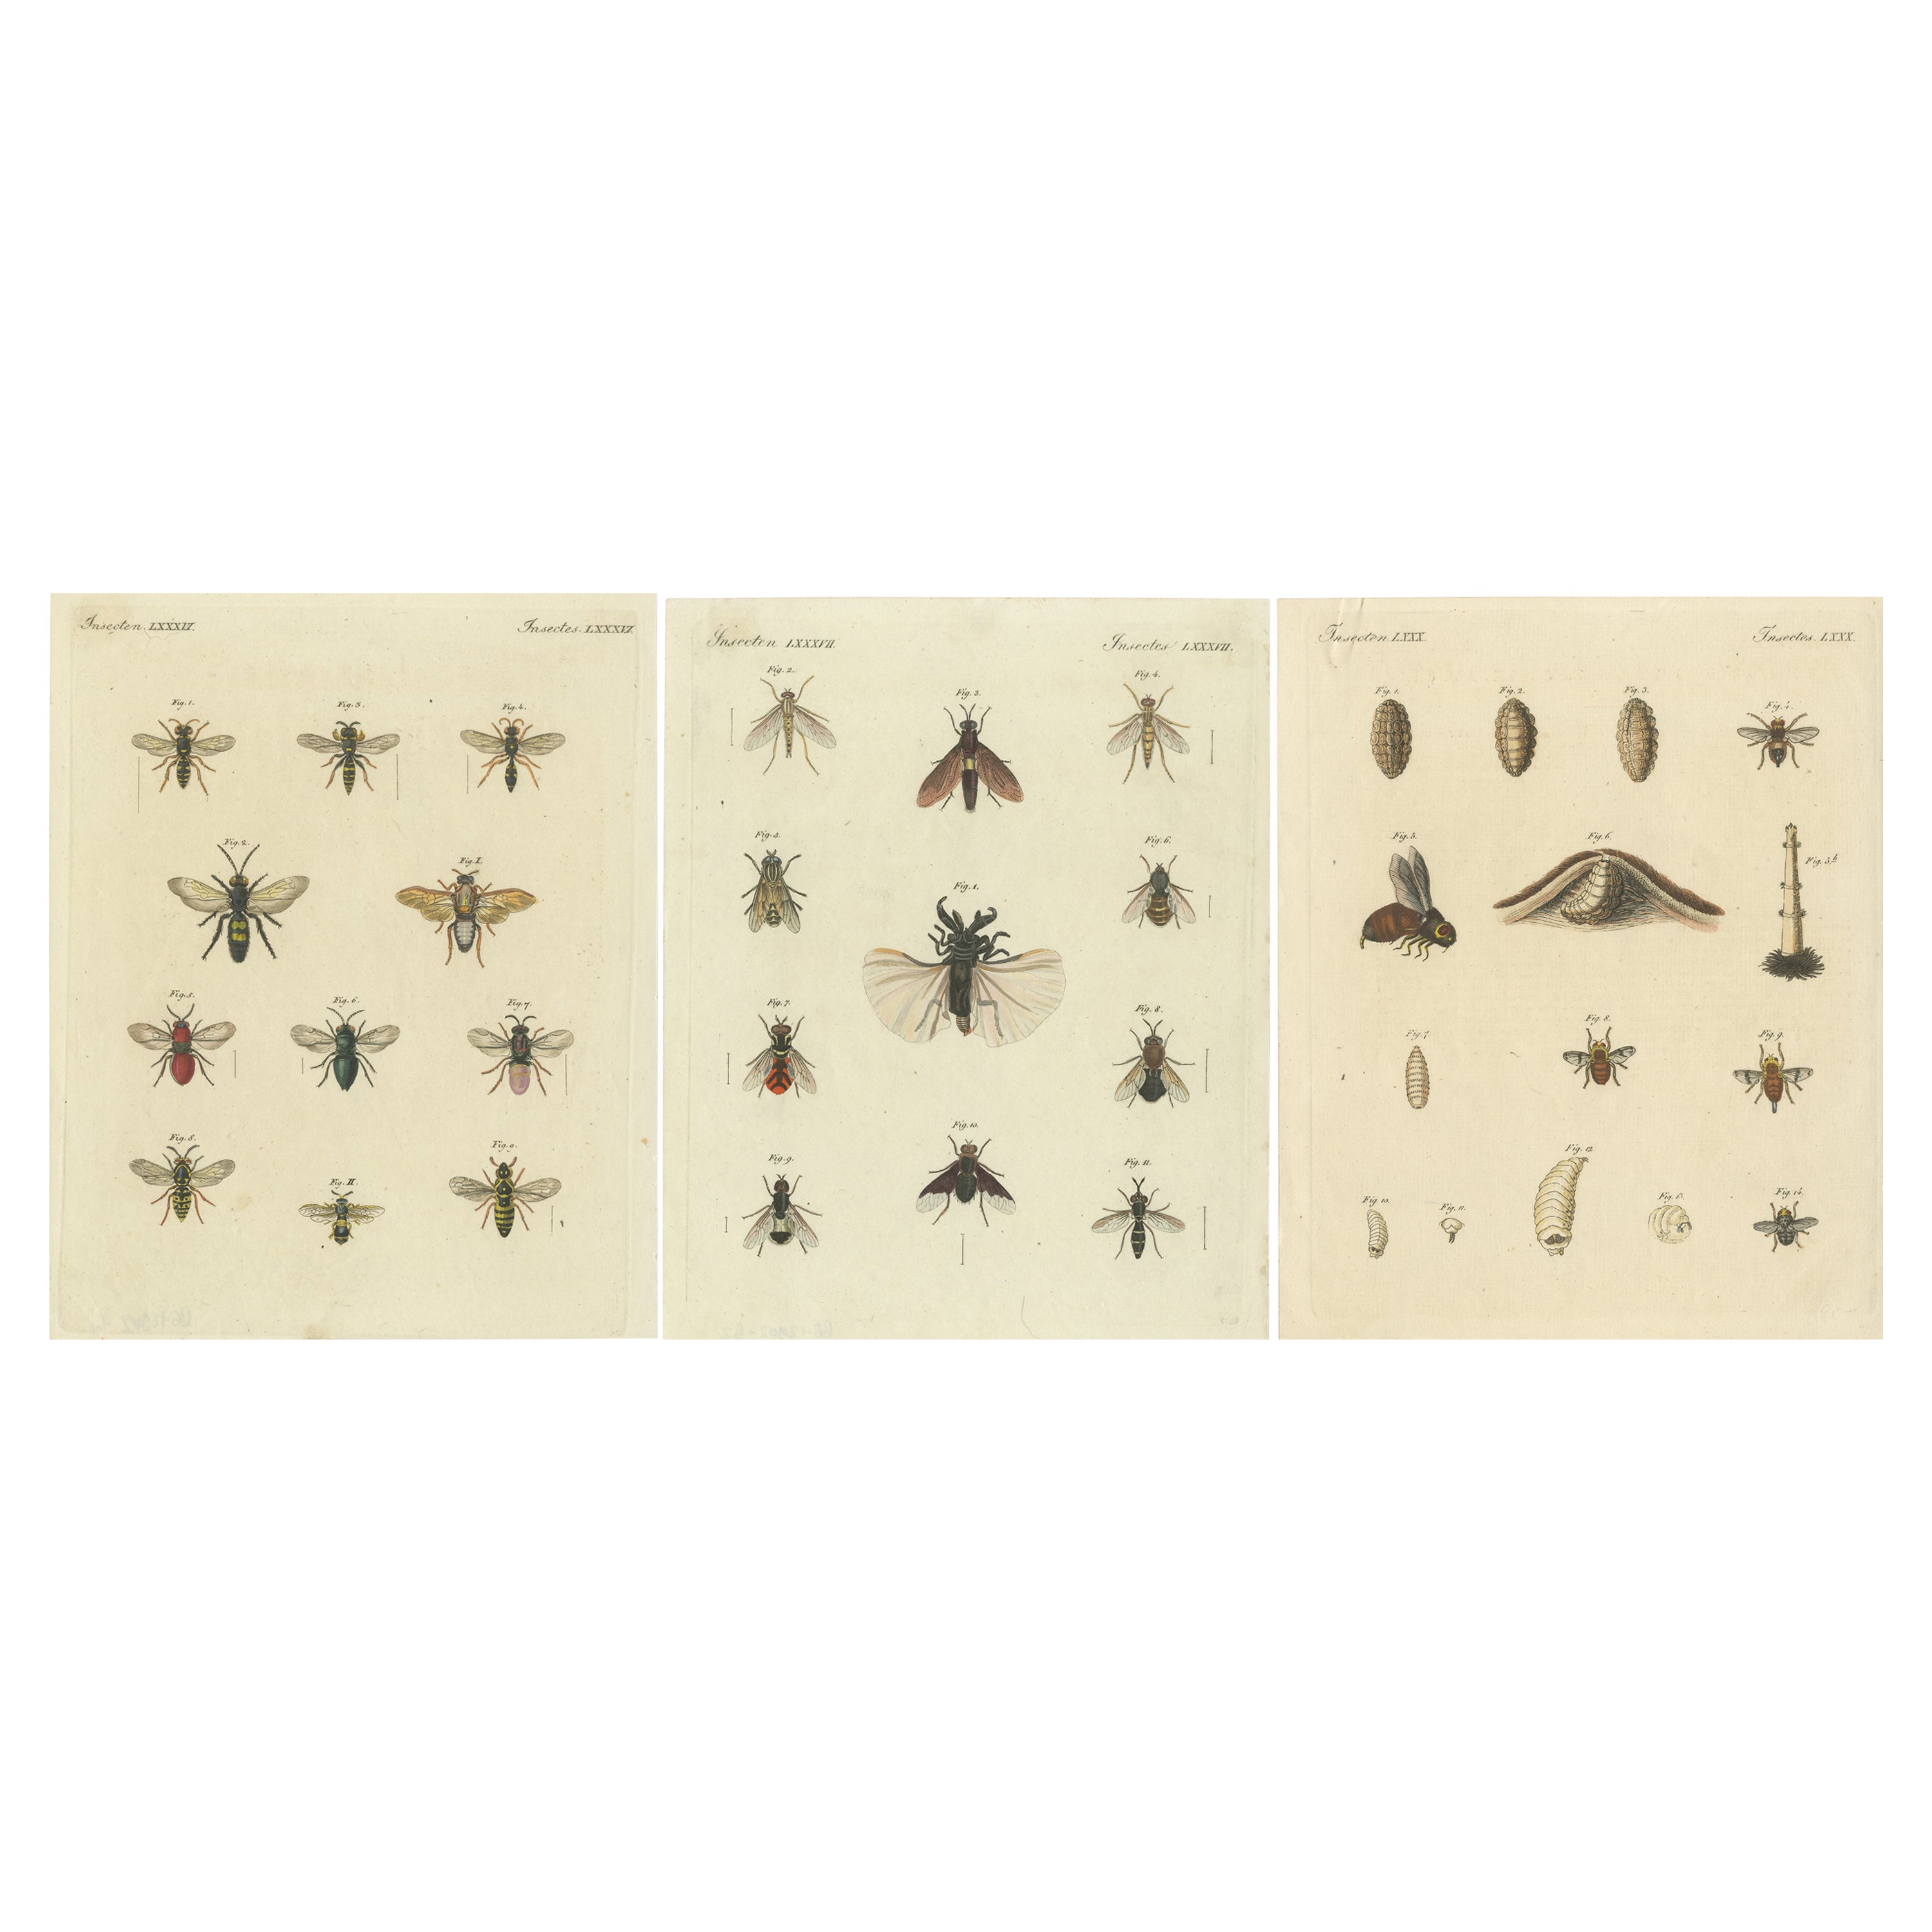 Ensemble de 3 estampes anciennes de divers insectes, y compris des lavis et des flèches